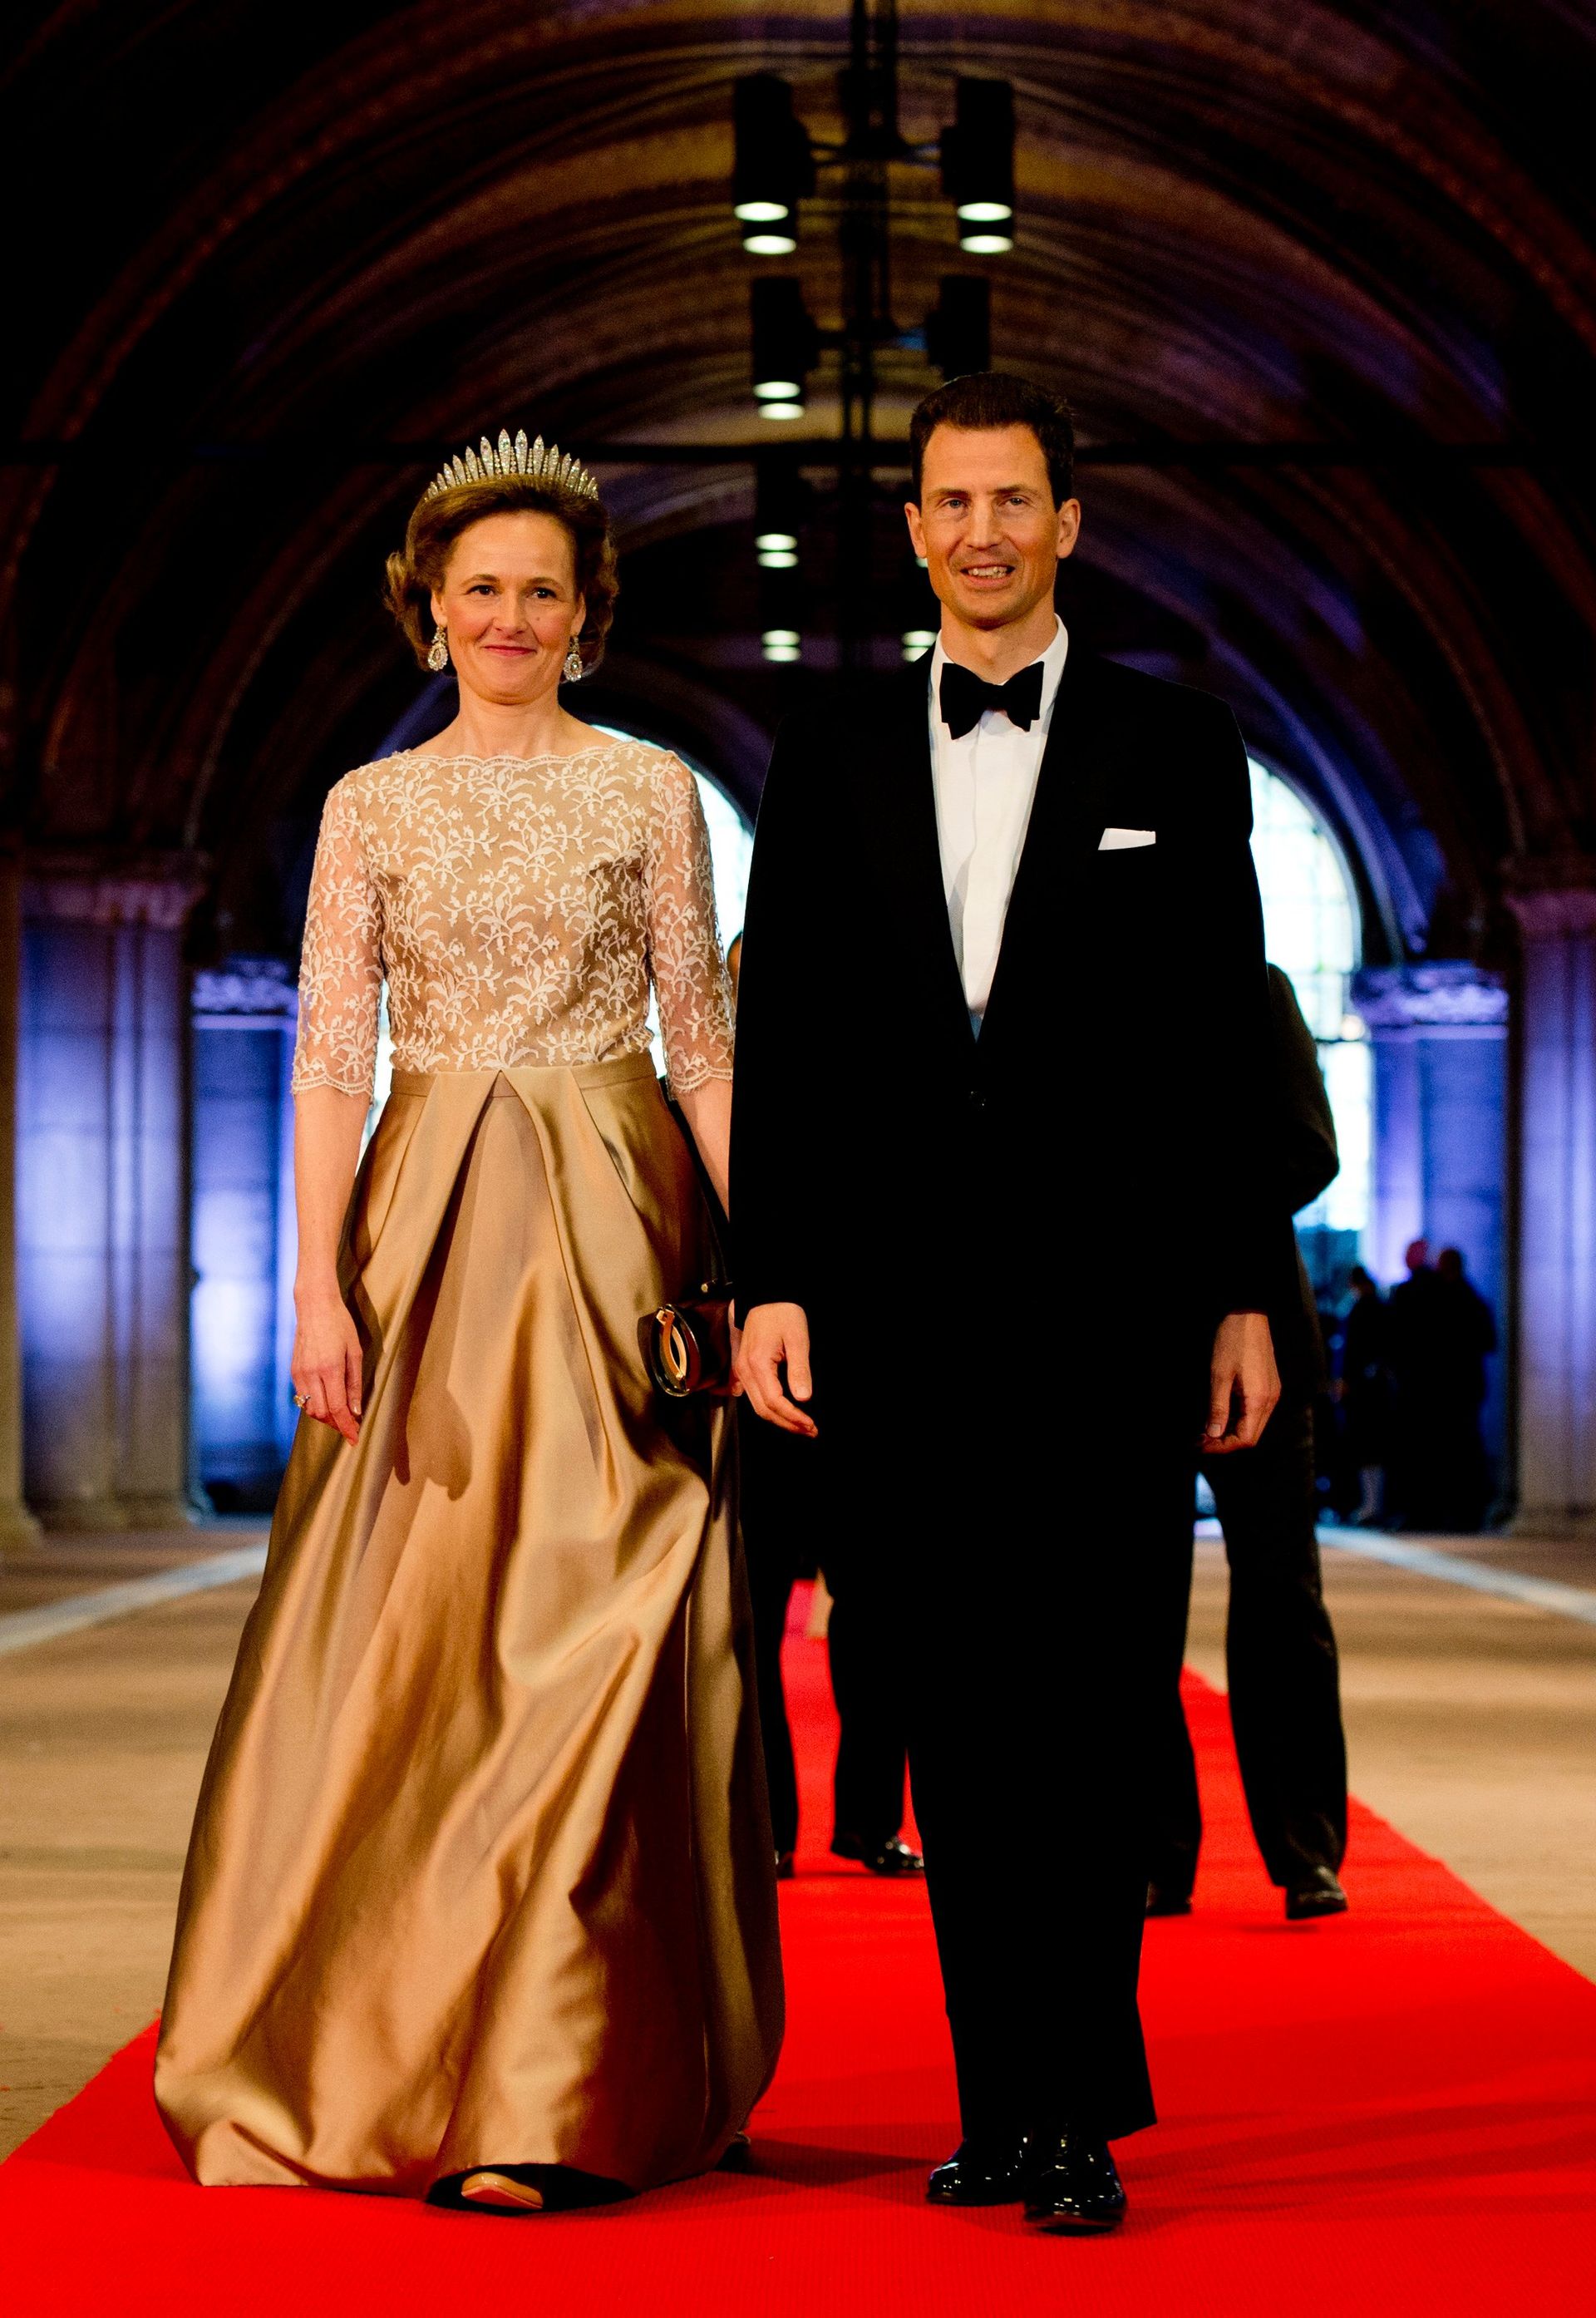 Erfprins Alois en erfprinses Sophie van Liechtenstein arriveren op 29 april 2013 in het Rijksmuseum